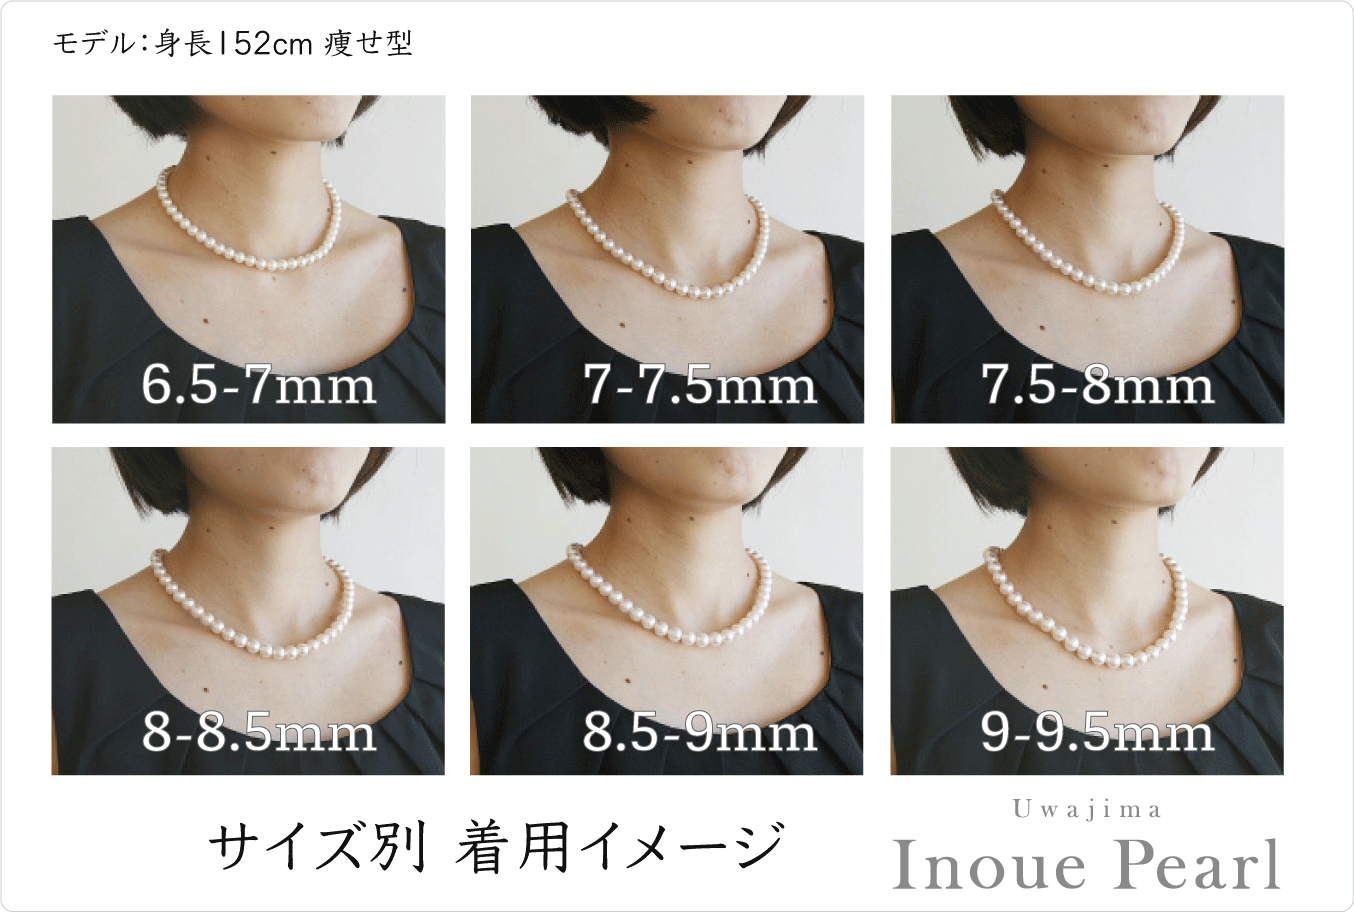 真珠ネックレス各サイズを着用した写真の比較